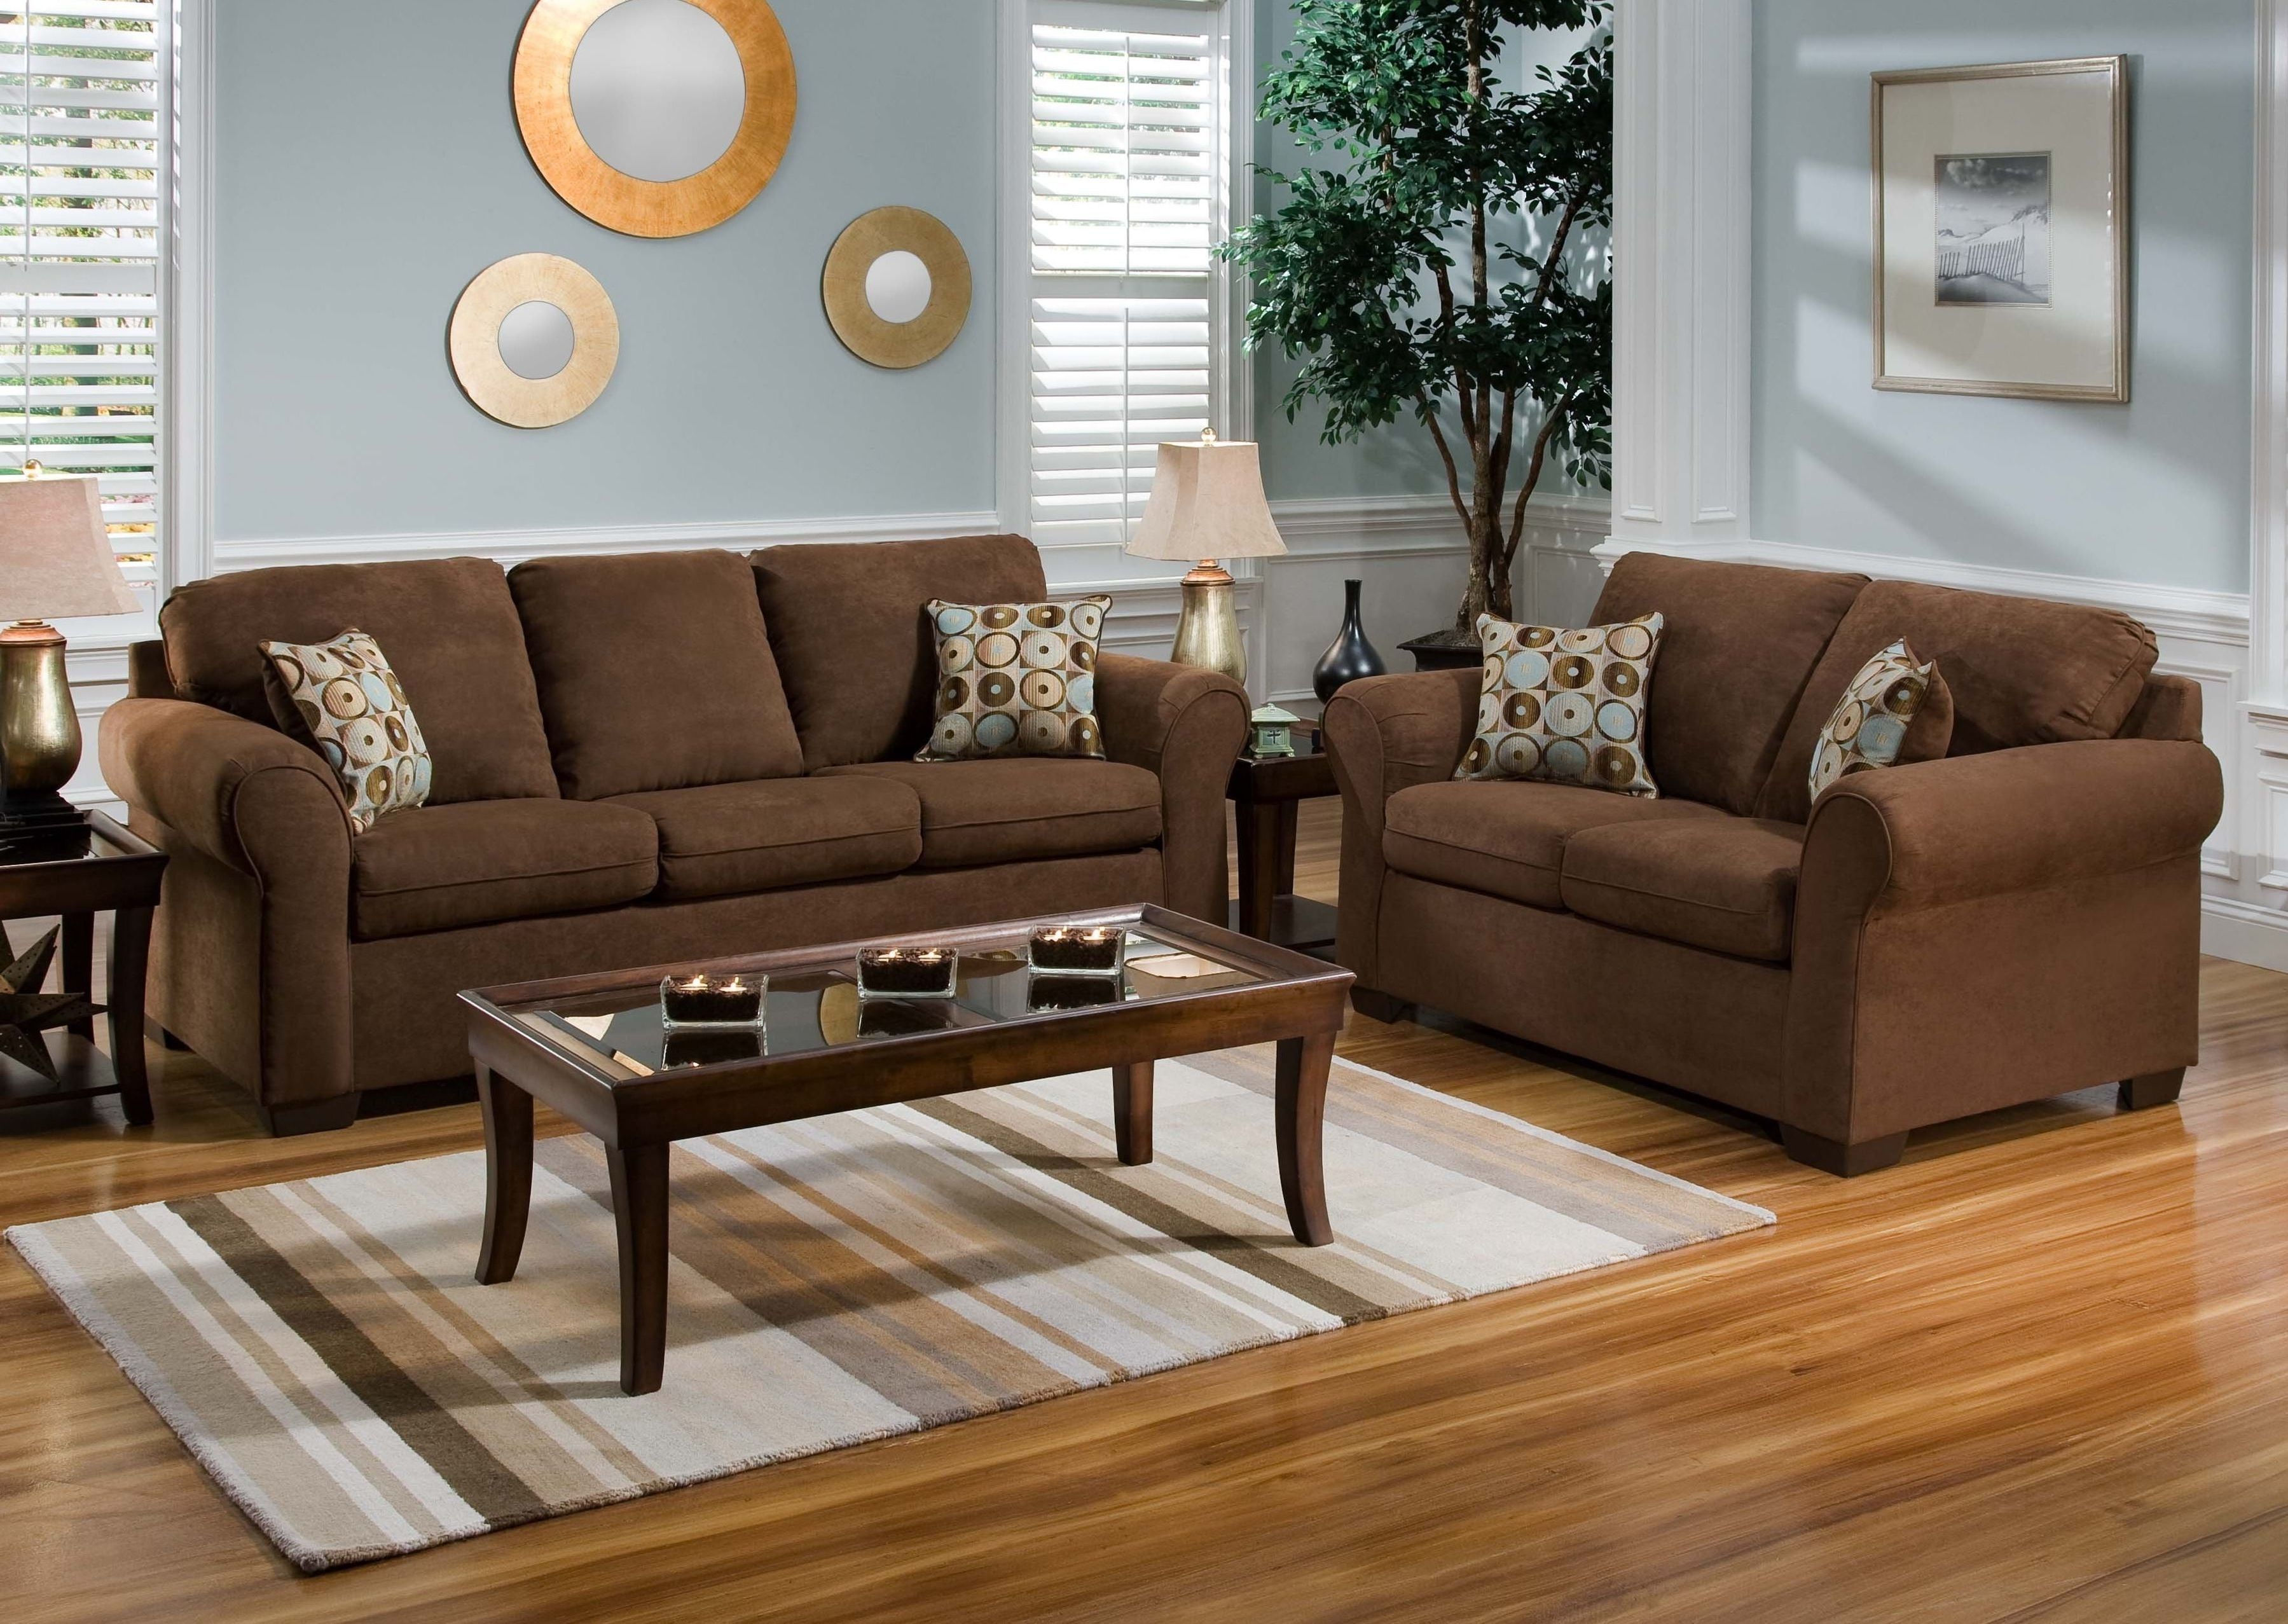 Chocolate Brown Wall Living Room And Grey Sofa